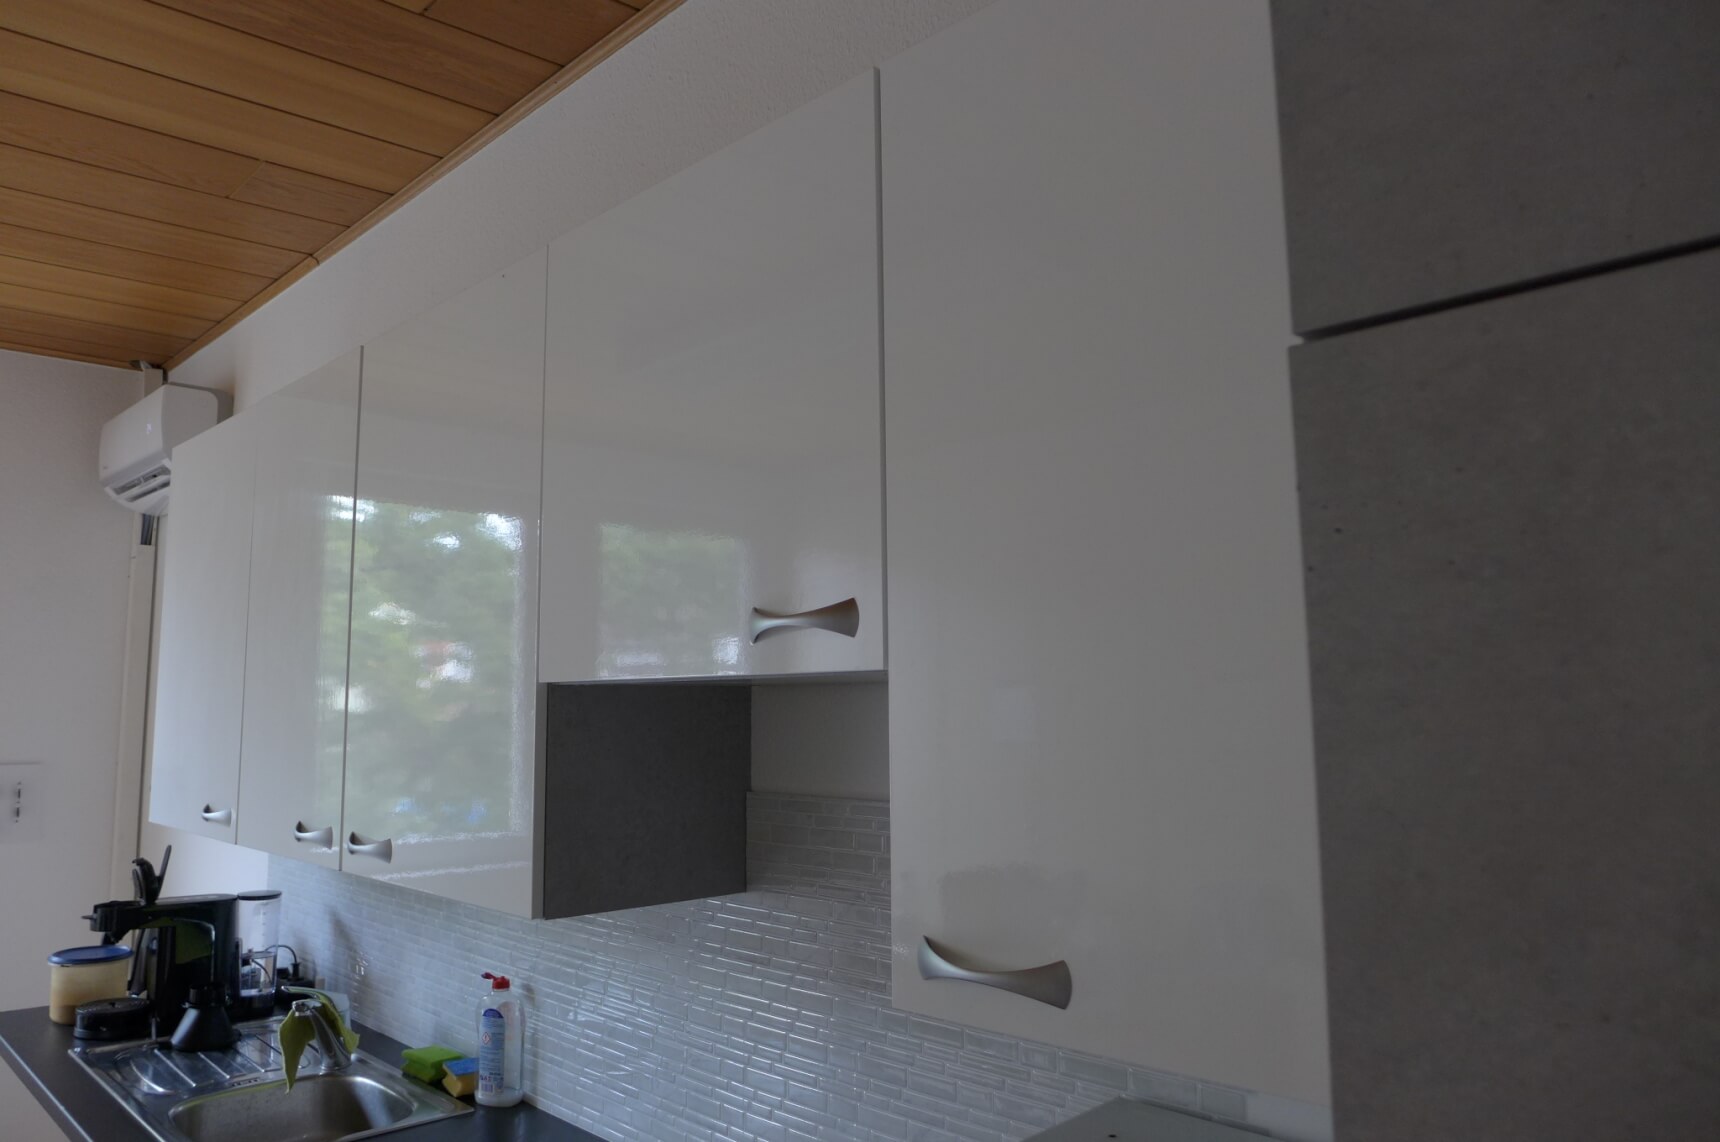 Küche aufpeppen von Blau über Holz mit Folie zu Beton Weiß und Schwarz ändern 04